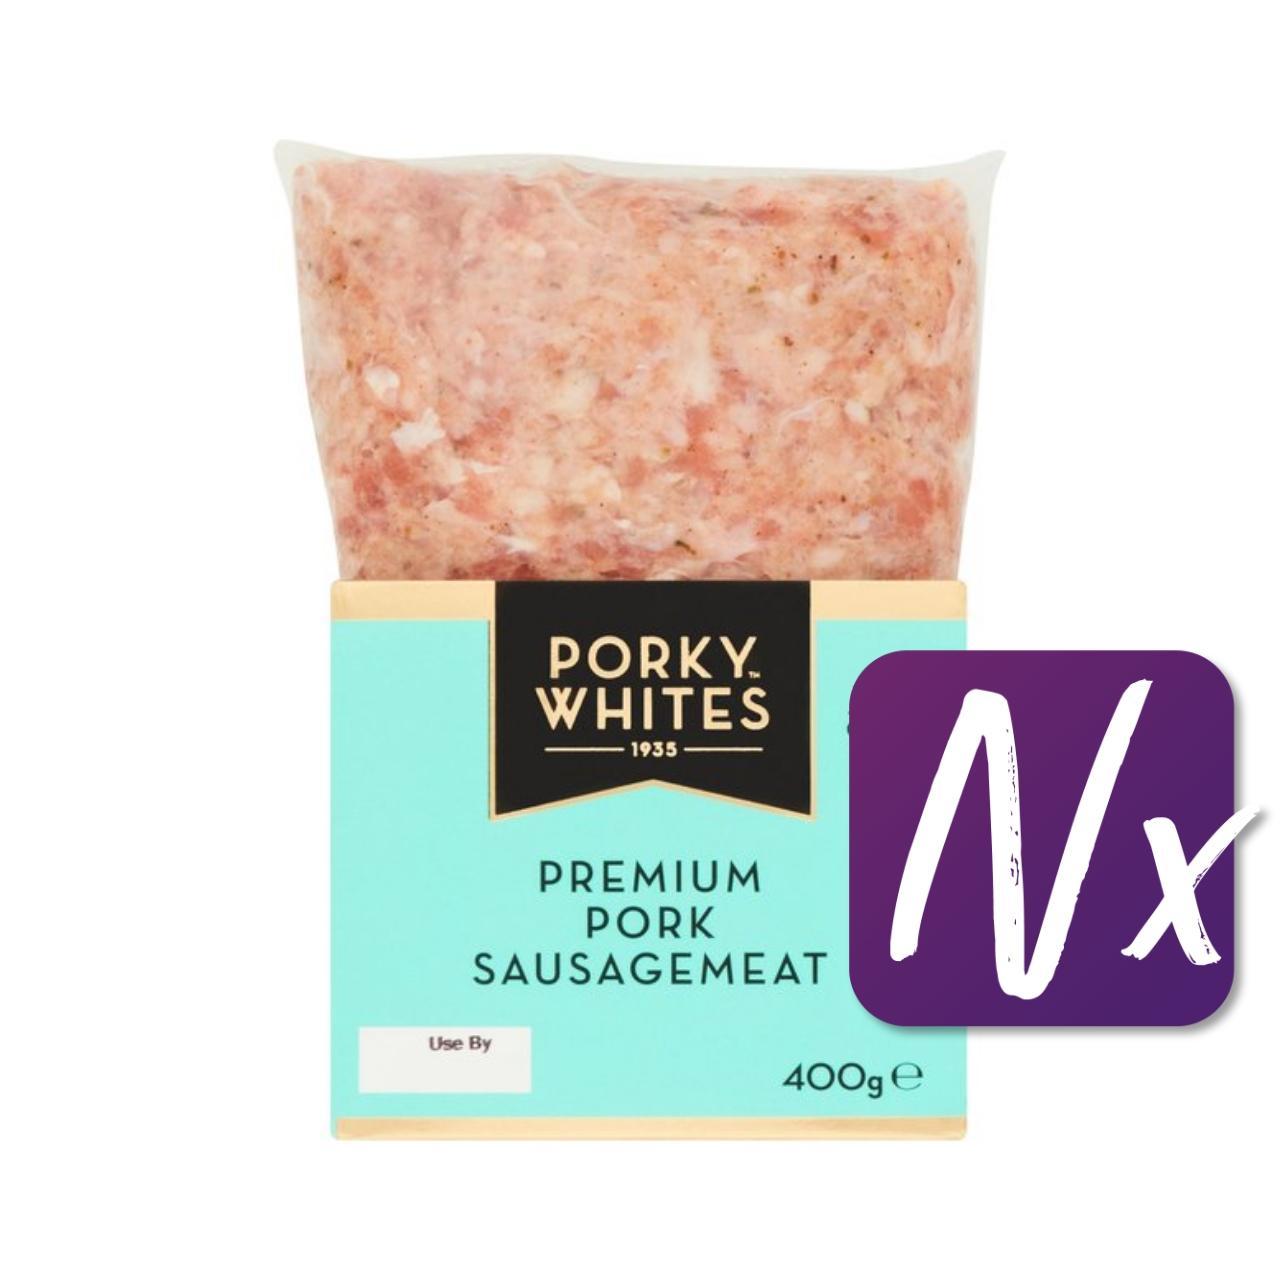 Porky Whites Premium Pork Sausagemeat